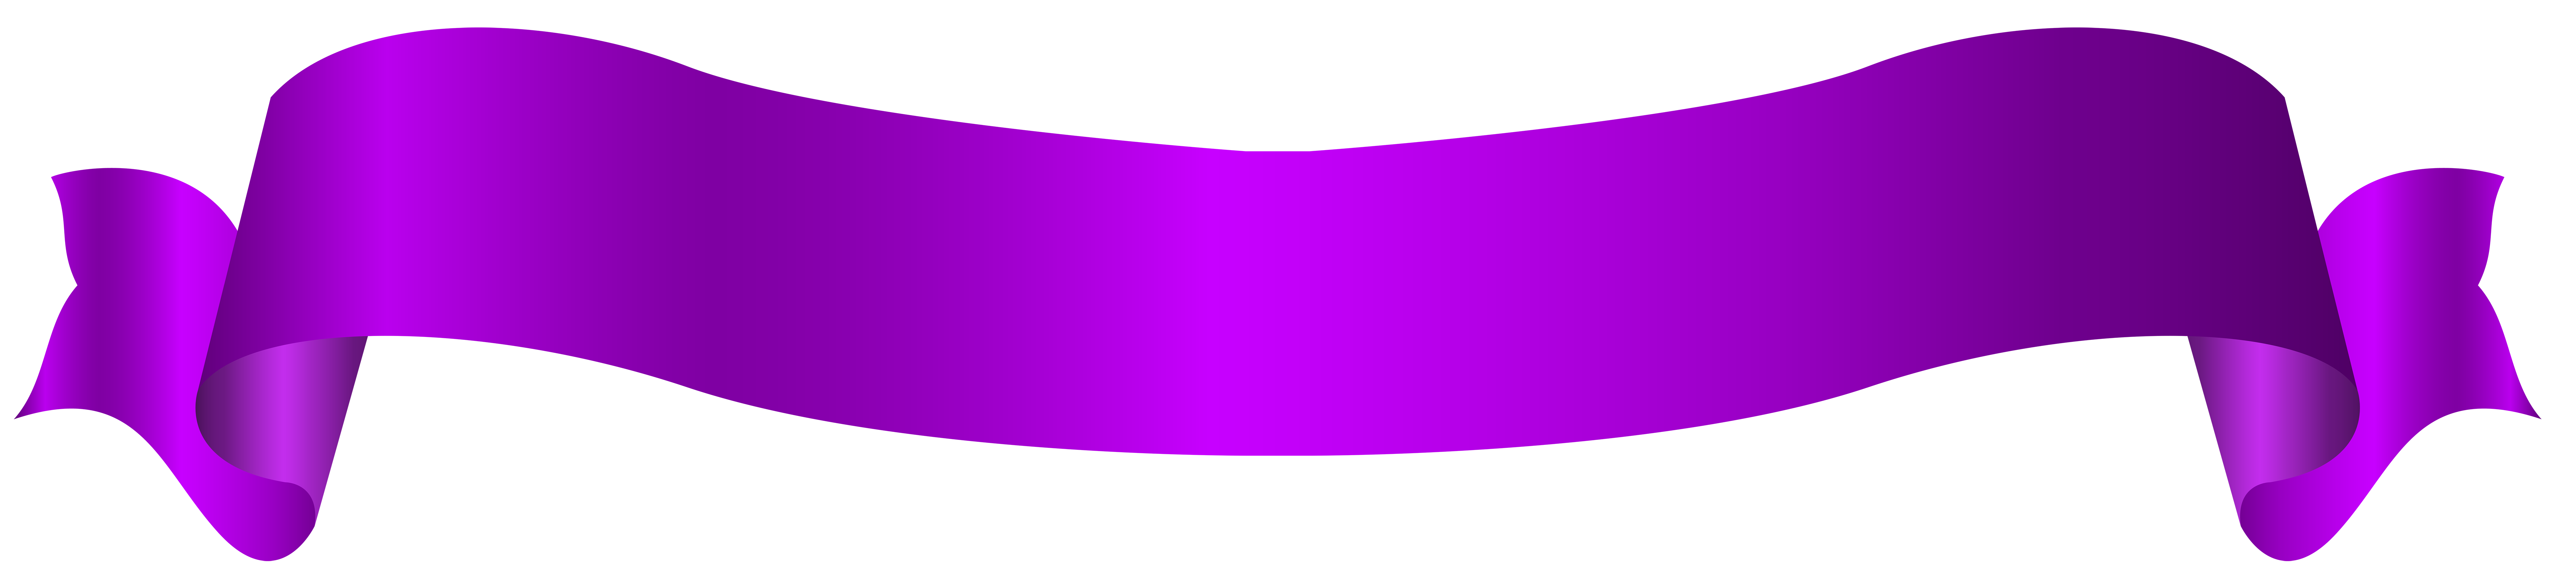 Banner violeta imagen PNG